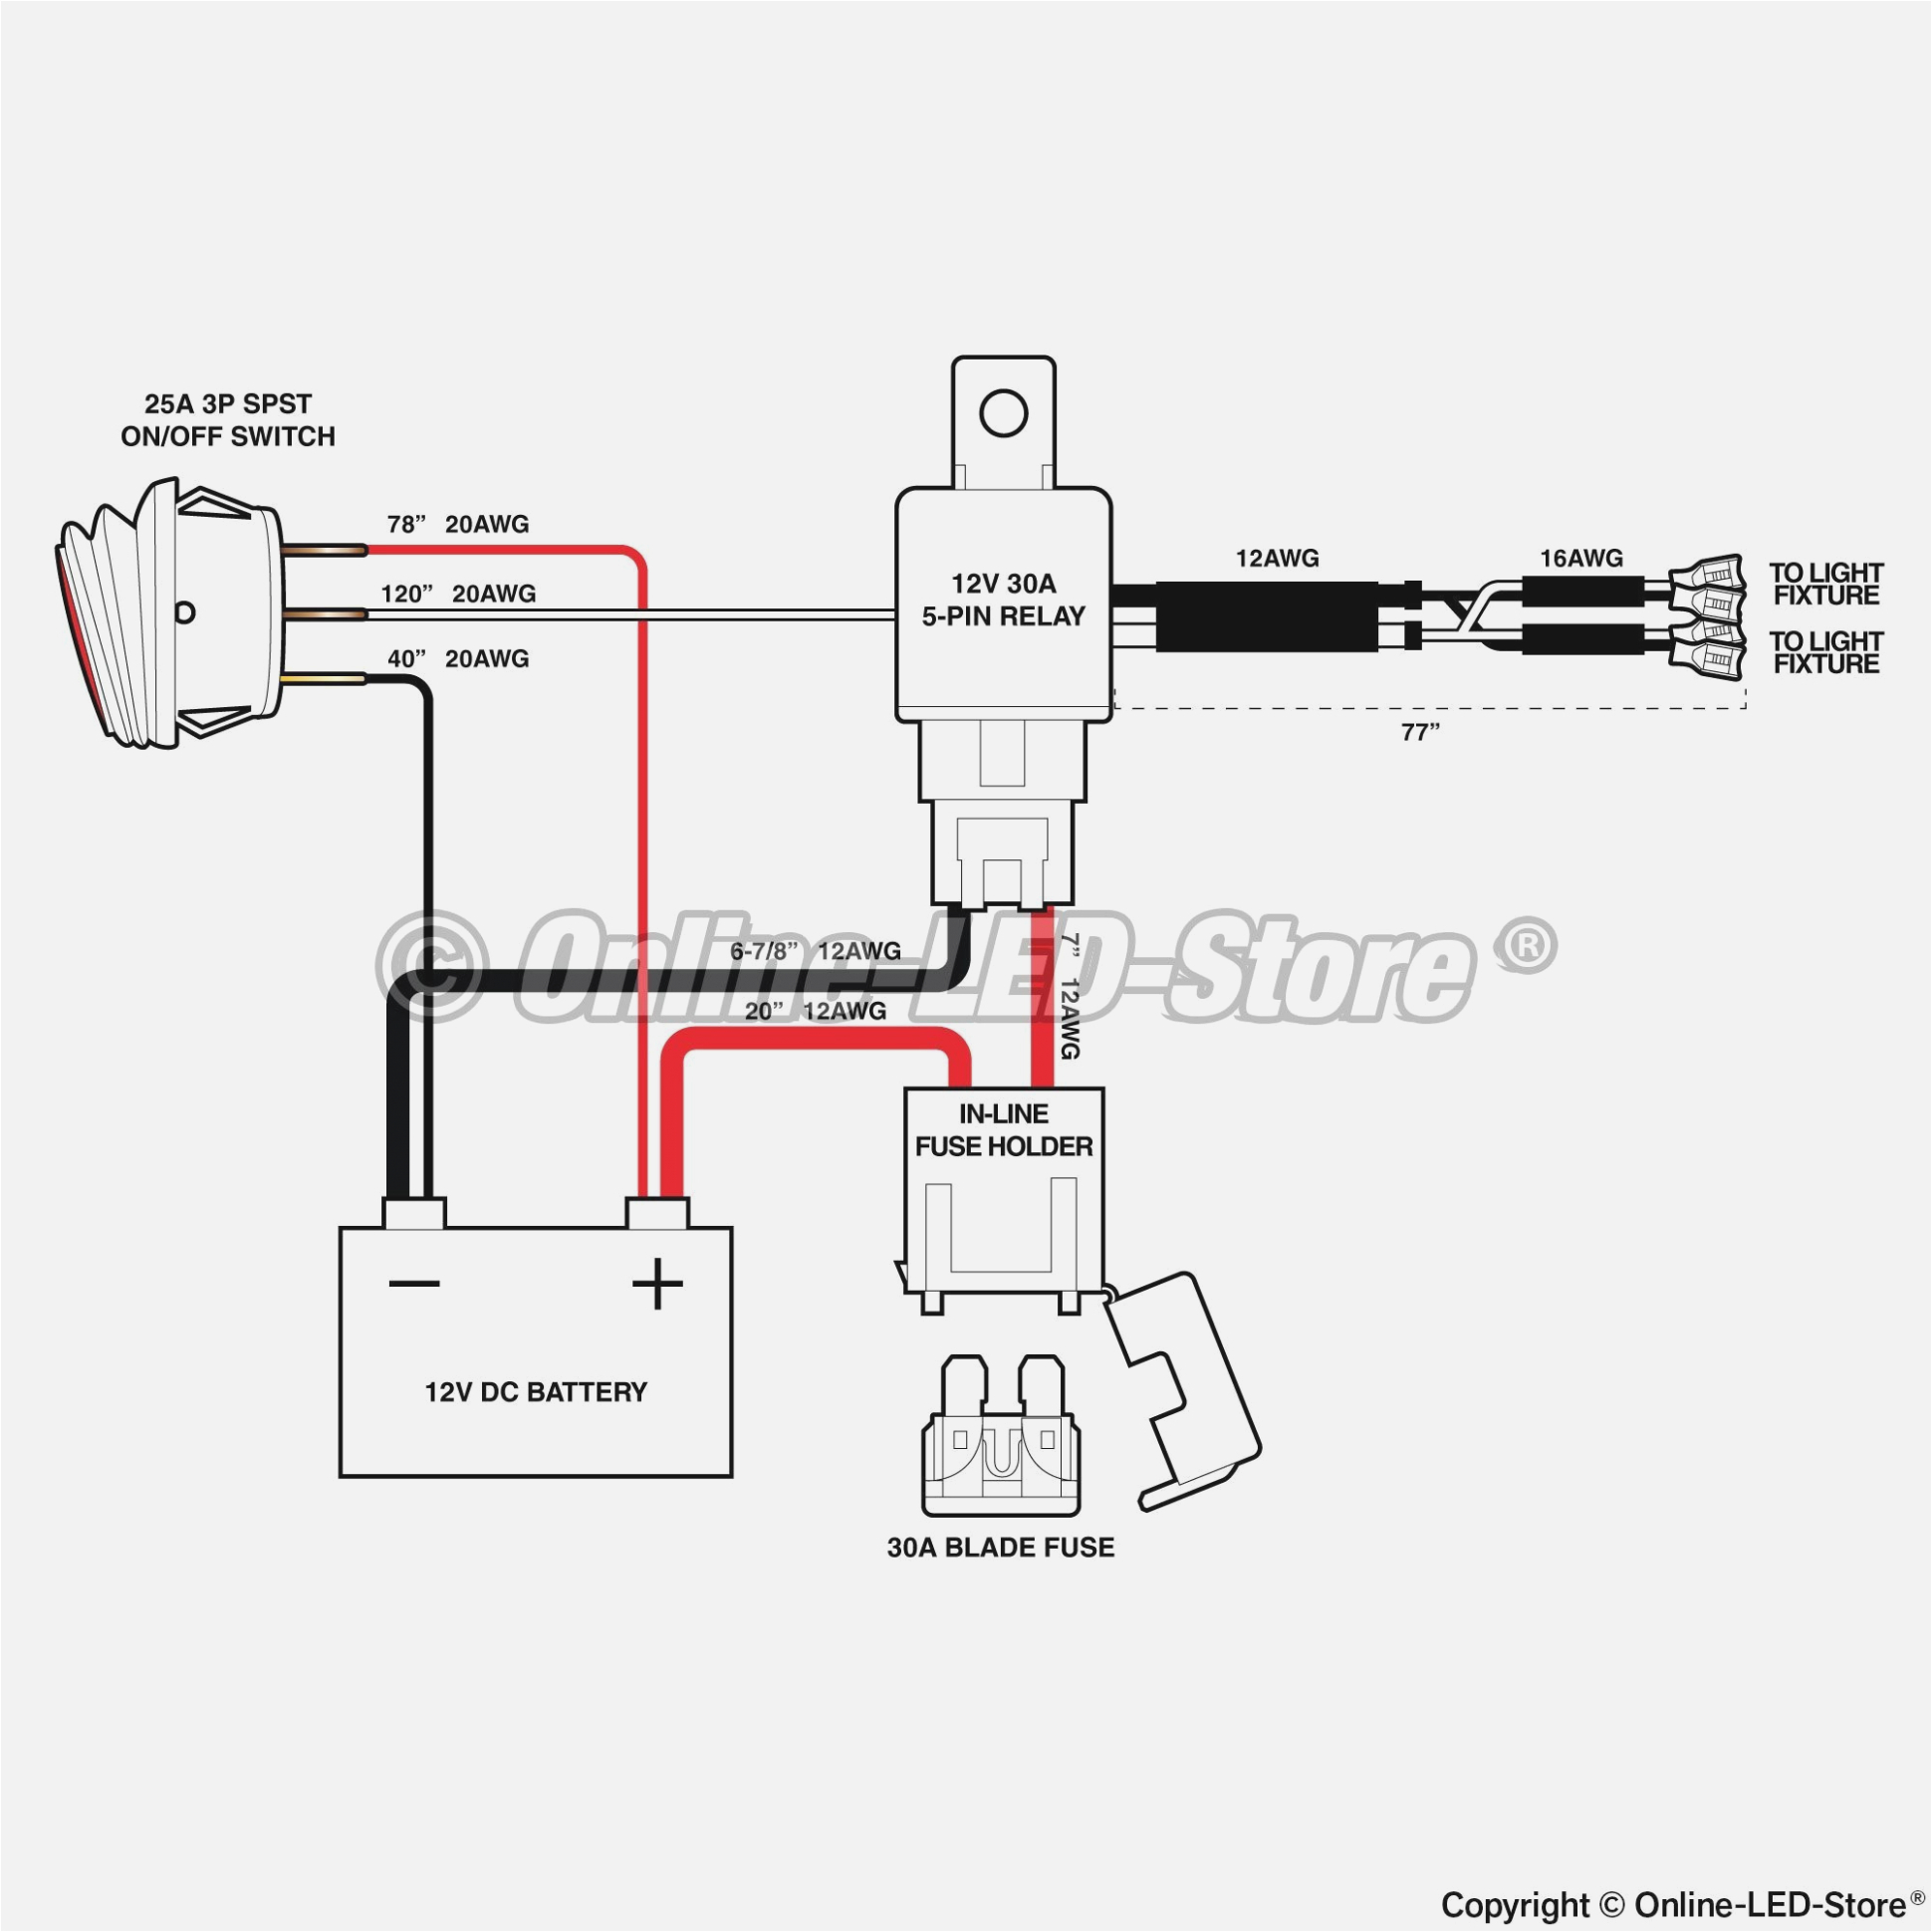 wiring pin diagram wiring diagram page 7 pin relay wiring diagram